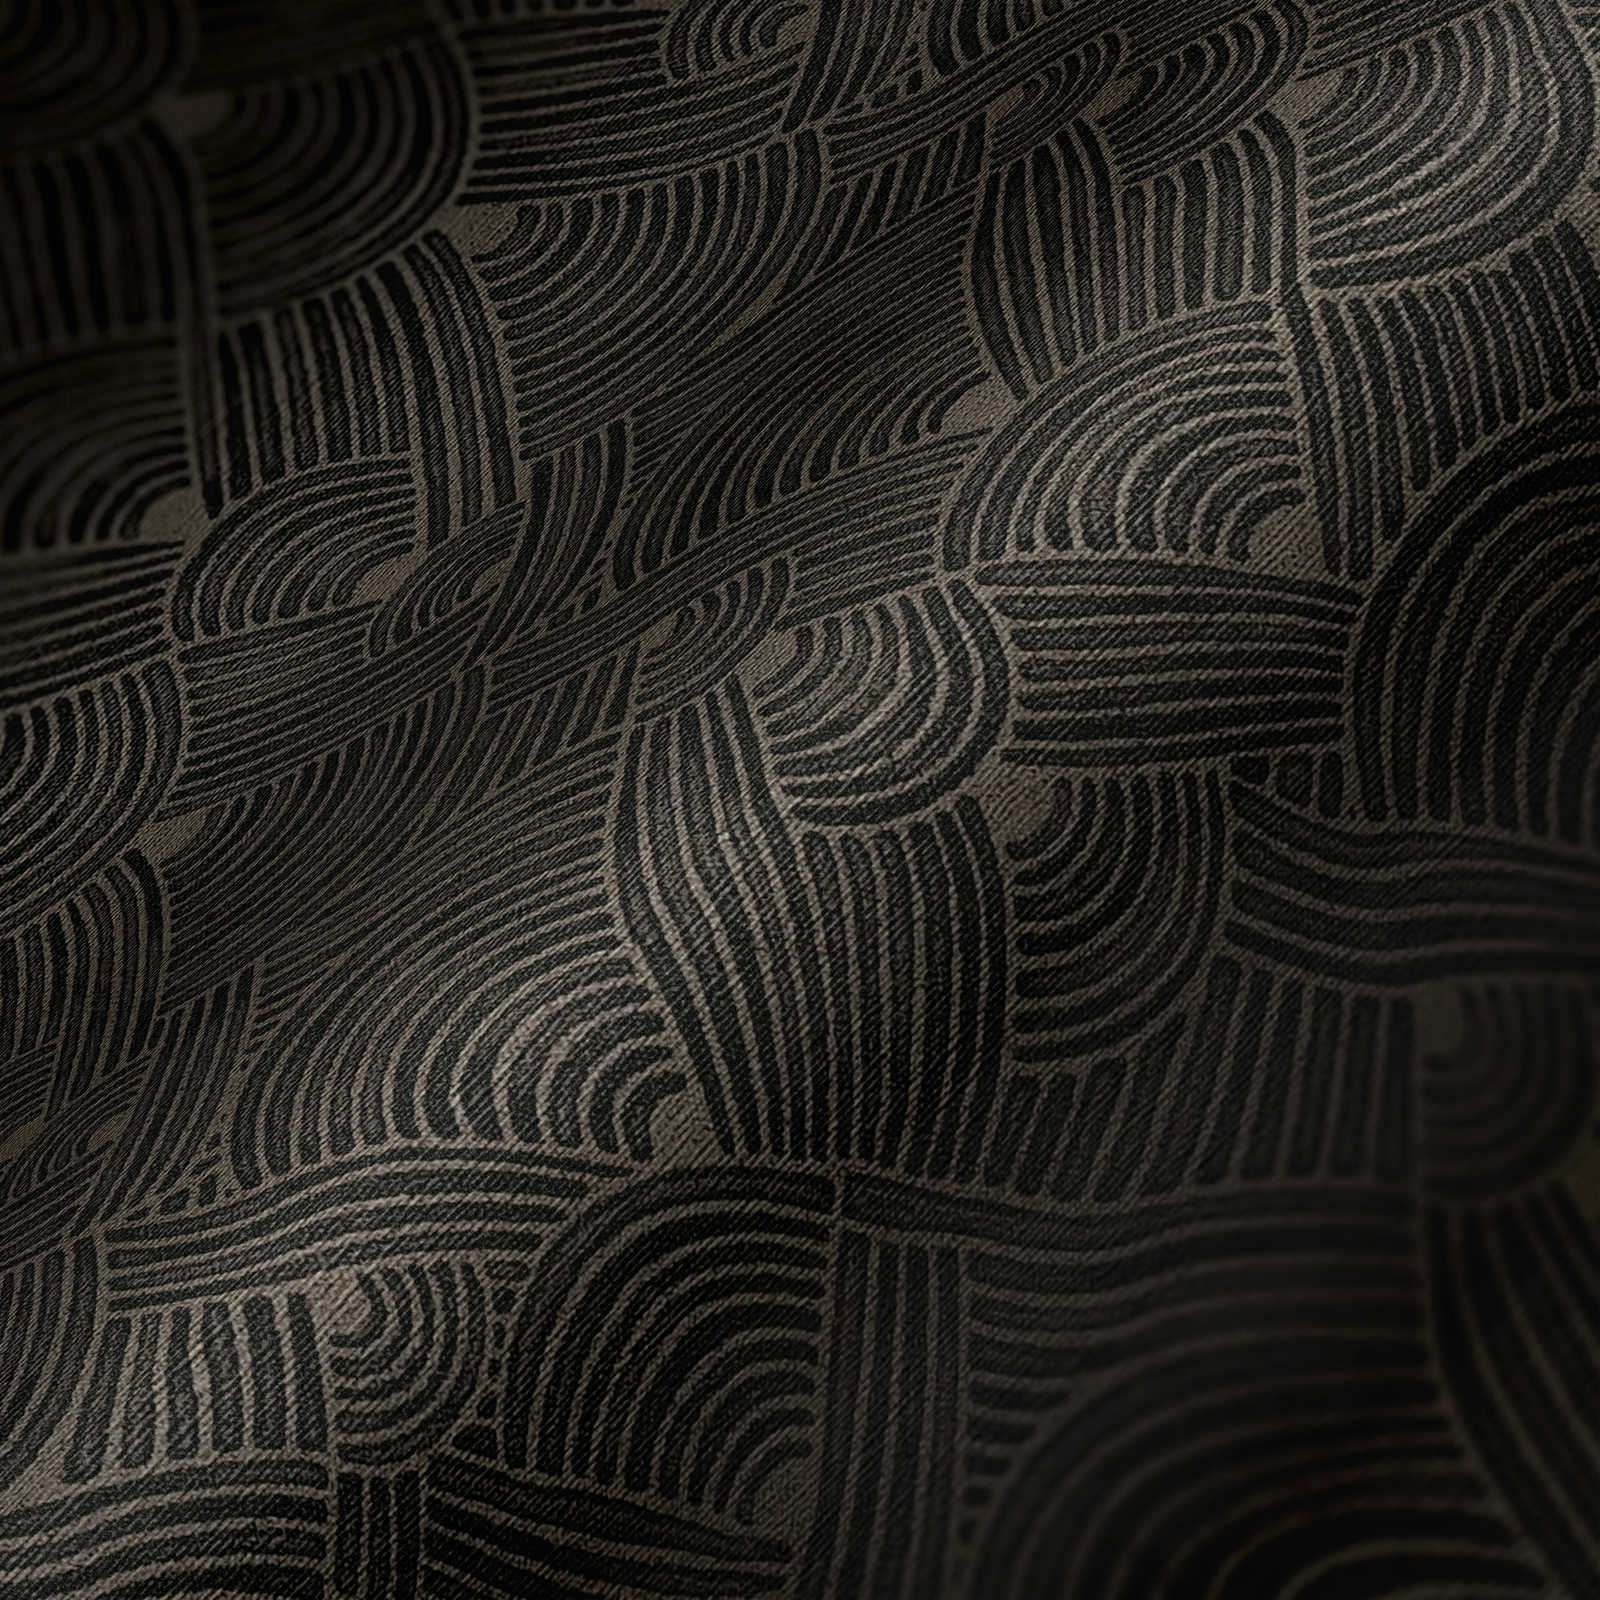             Papier peint foncé motif tressé avec dessin structuré - gris, noir
        